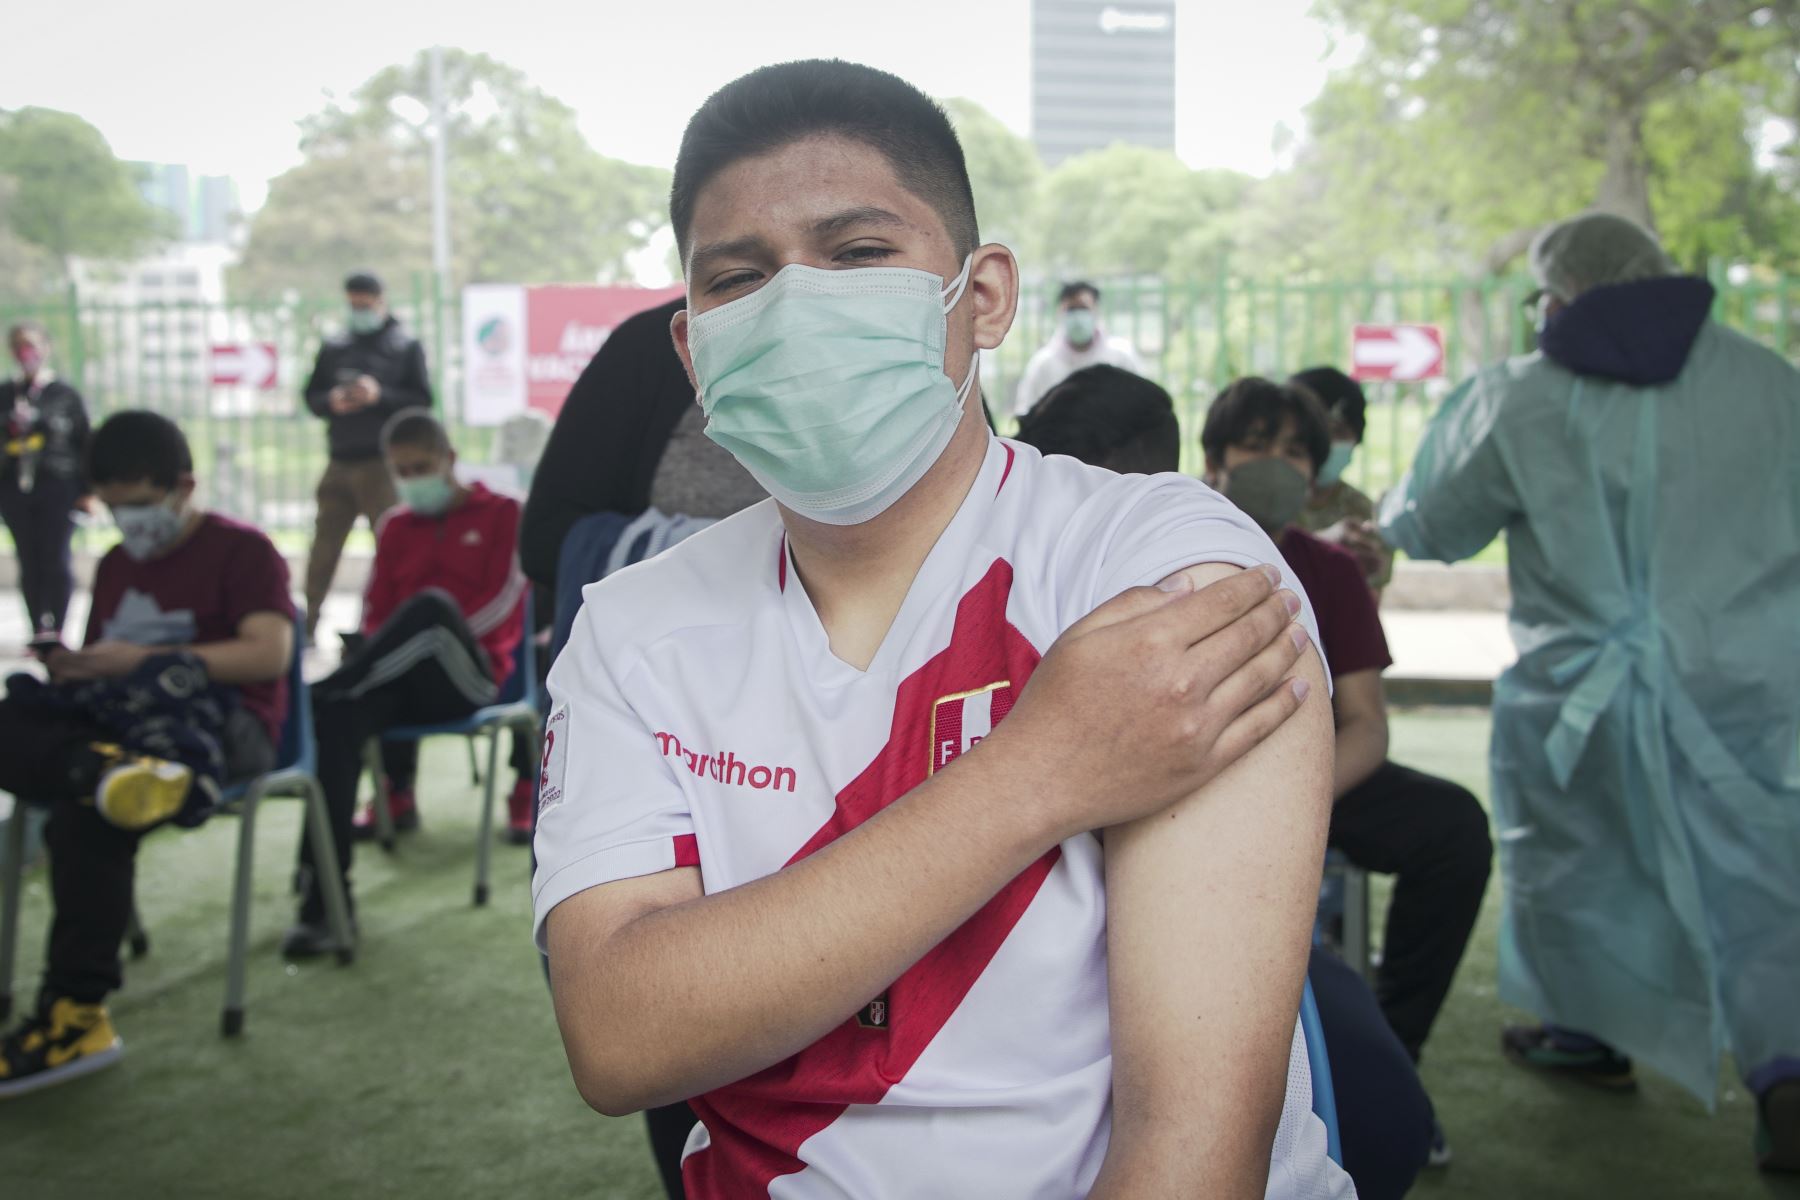 Minsa lanza campaña “Las vacunas nos dan esperanza” y el VacunaFest Navideño.
Foto: ANDINA/MINSA